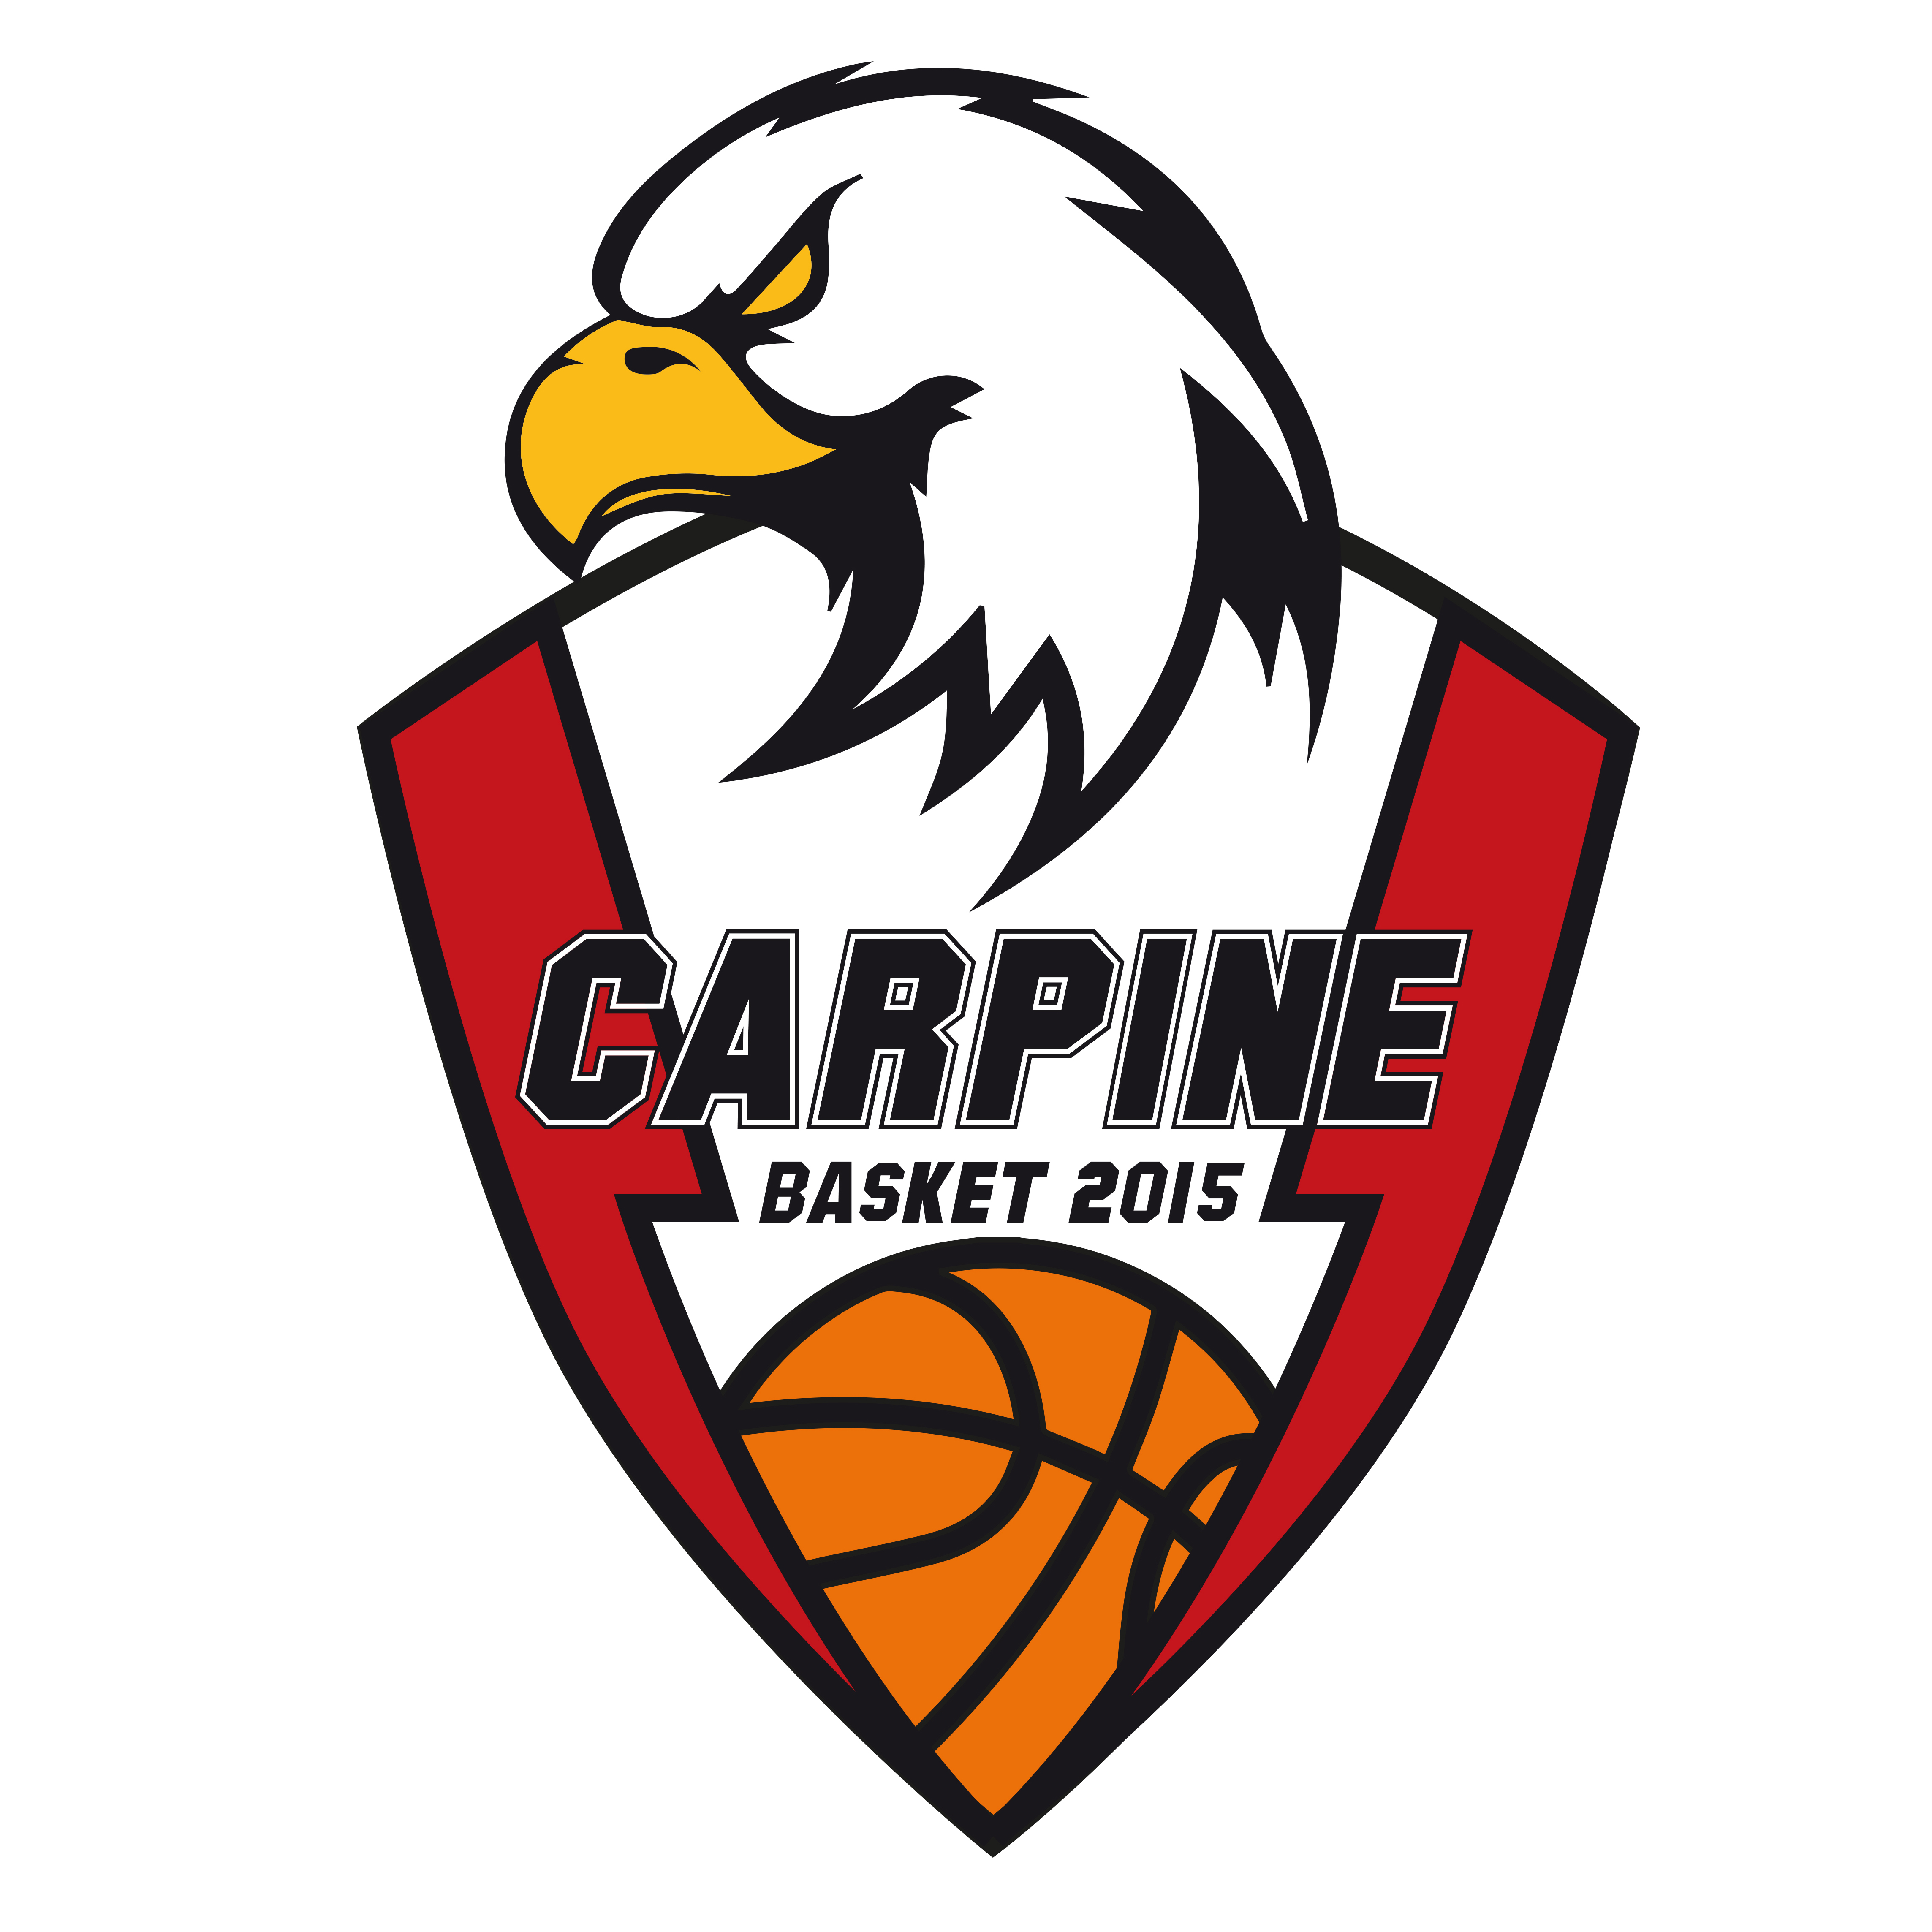 CARPINE BASKET 2015